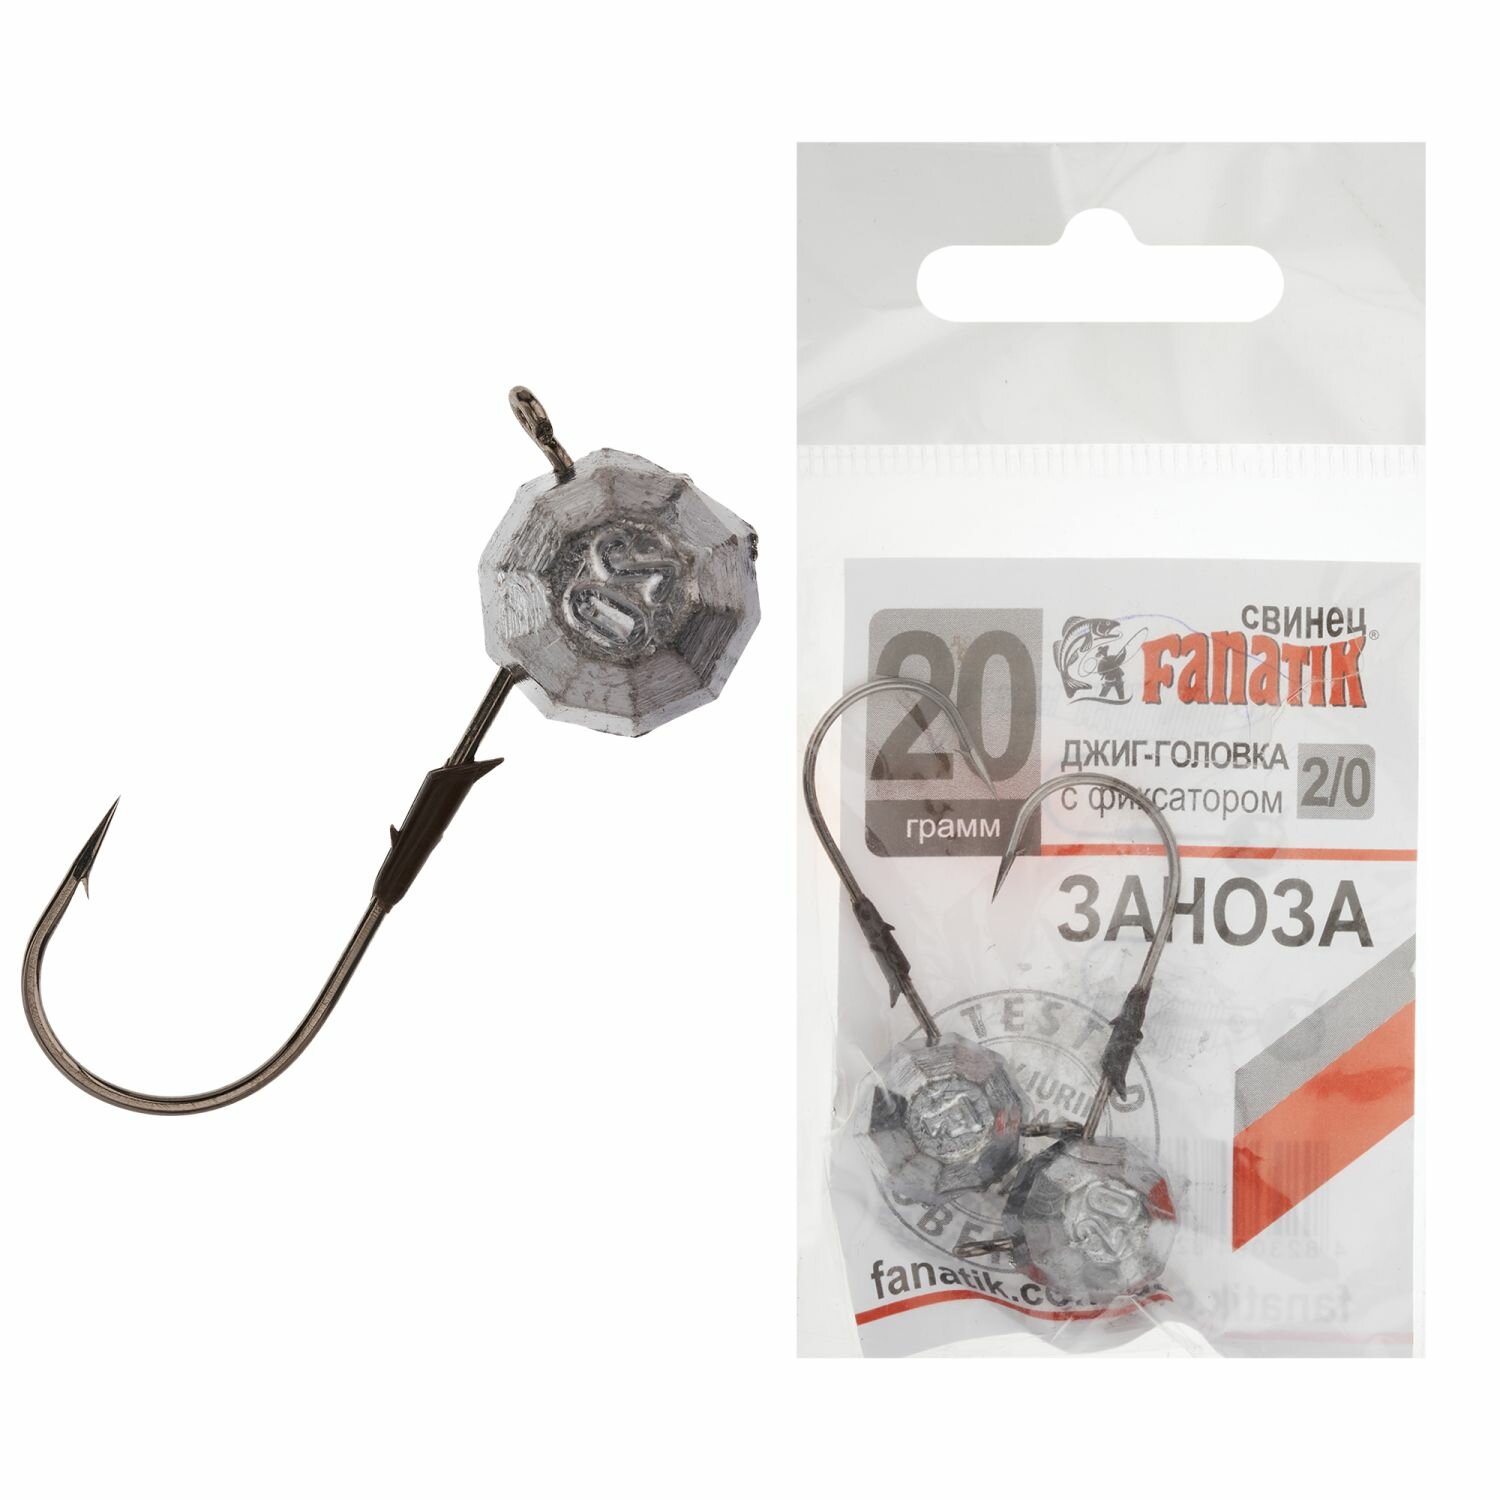 Джиг головка для рыбалки Fanatik Заноза #2/0 20гр, 2 шт в упаковке